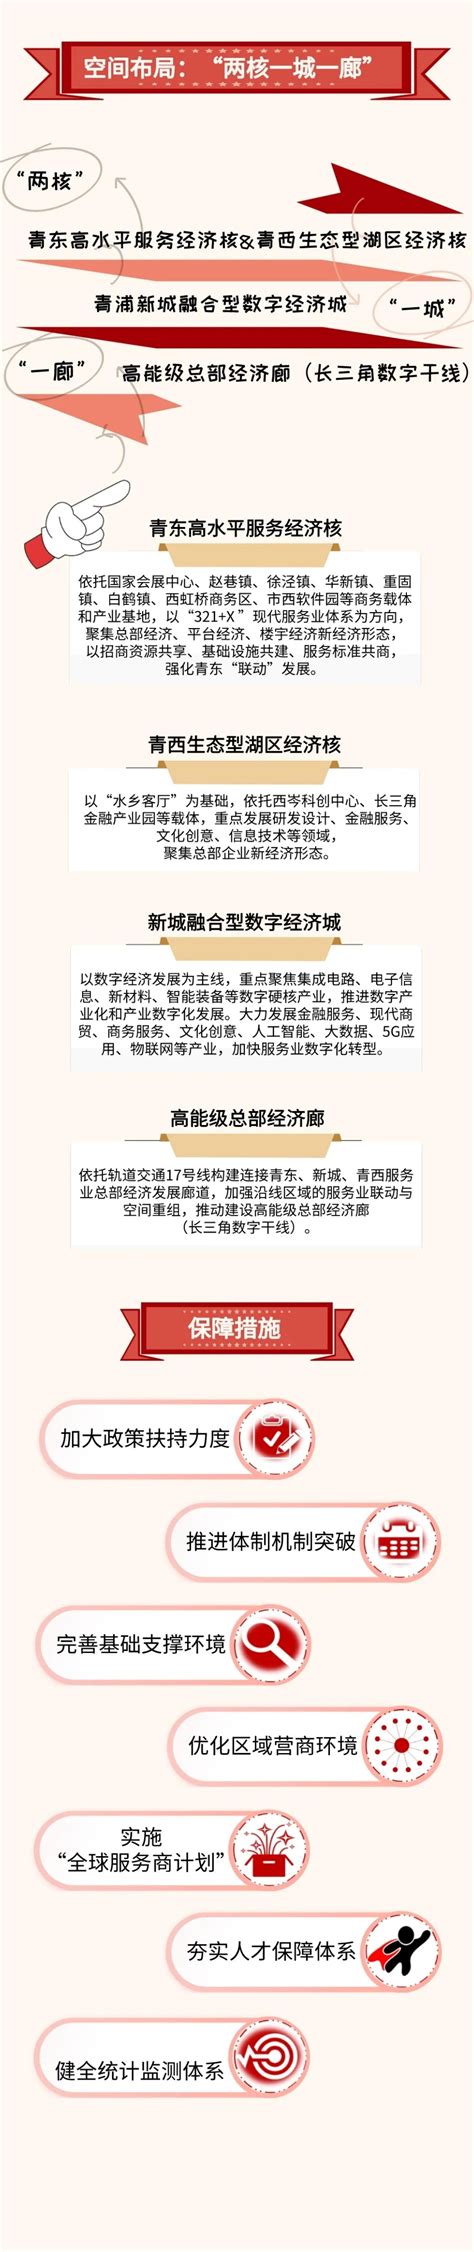 一图读懂|青浦区现代服务业发展“十四五规划”-上海济语知识产权代理有限公司